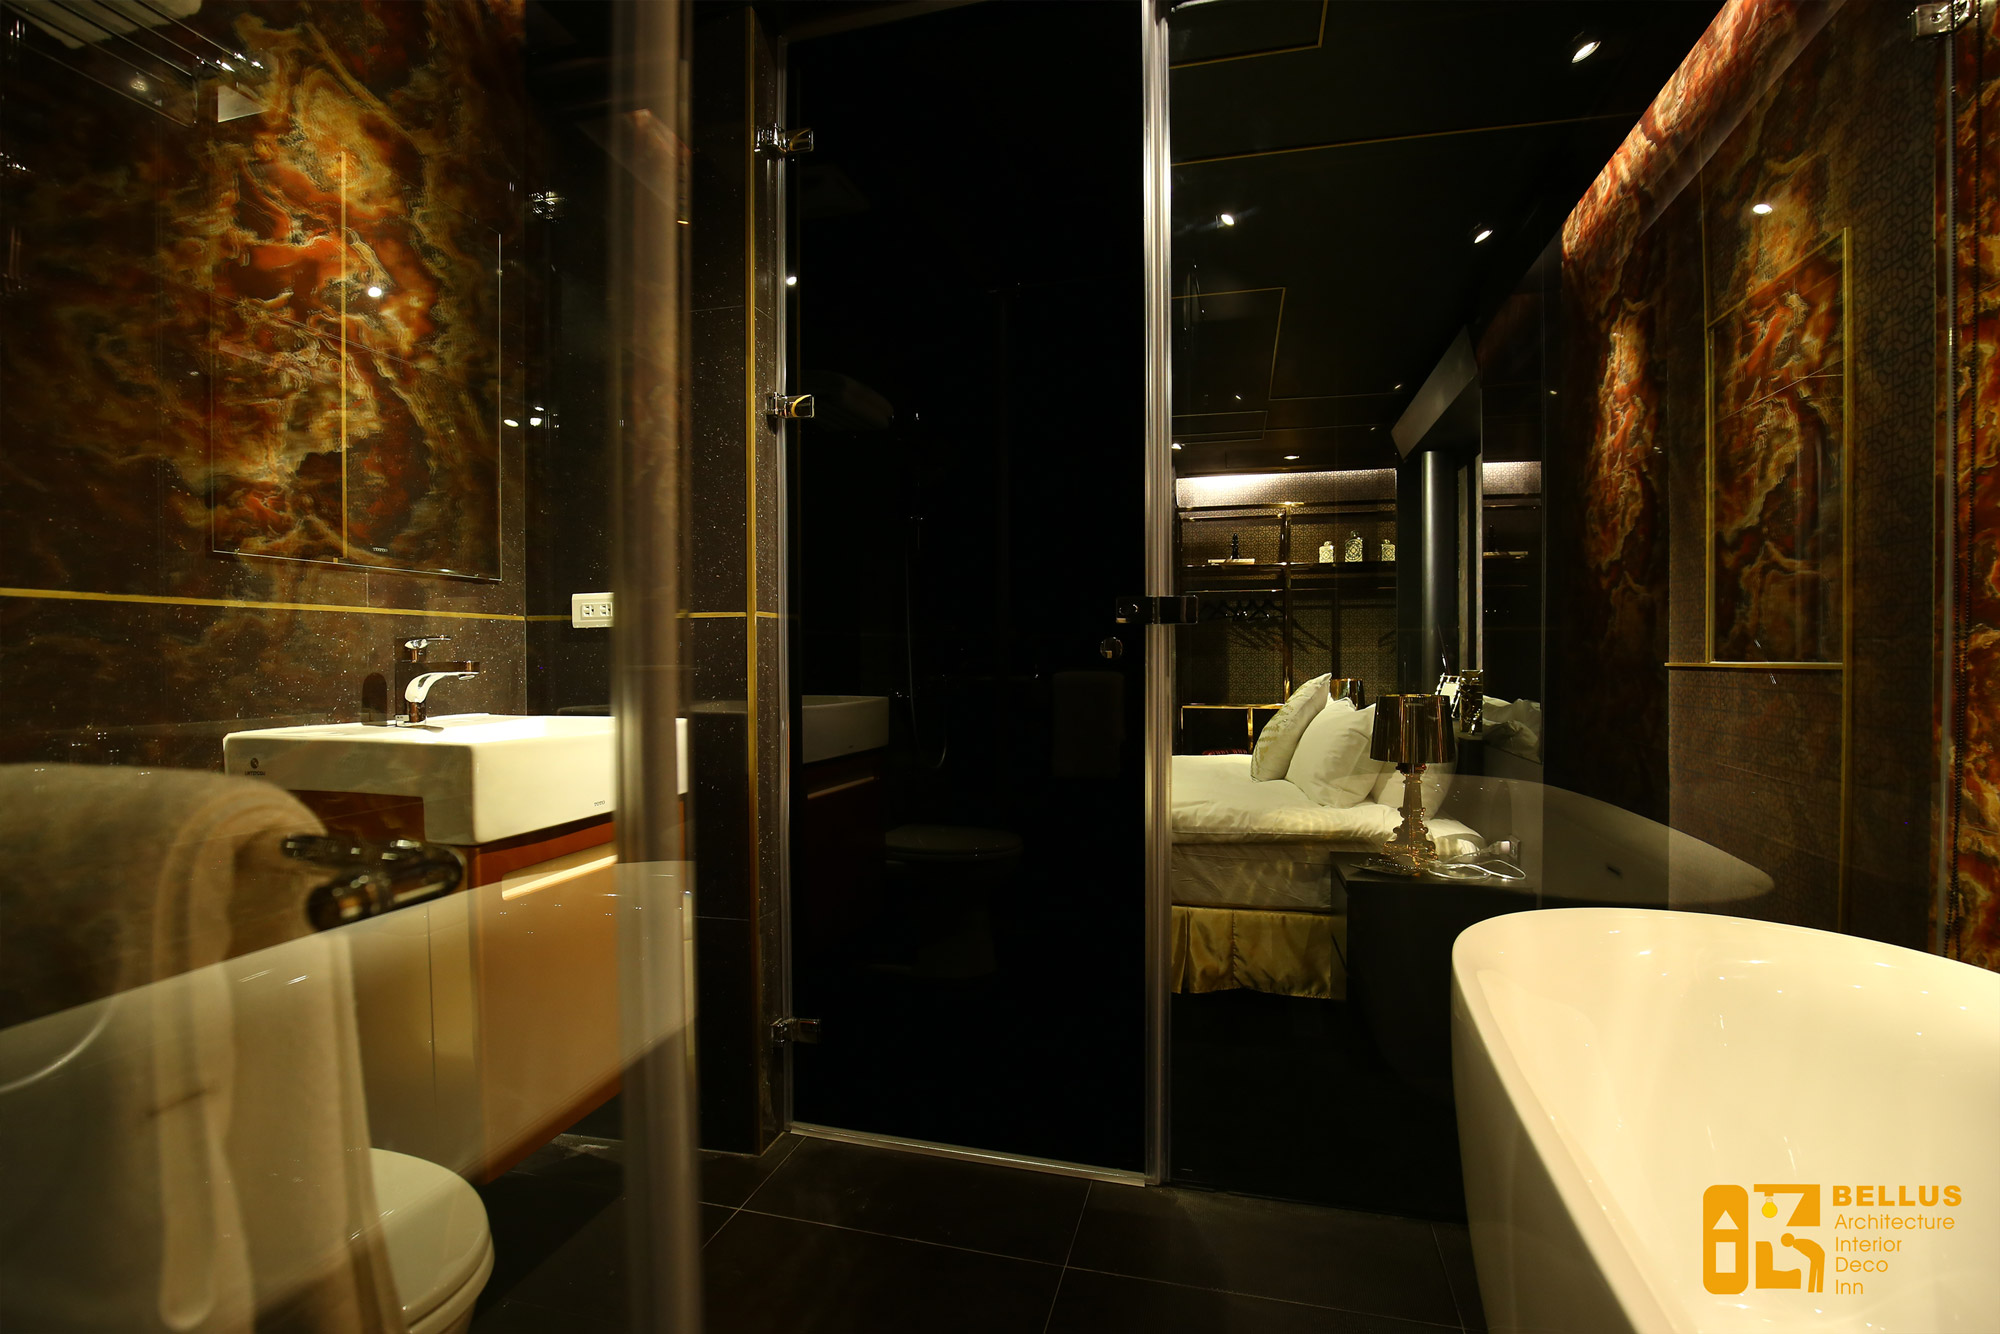 淋浴區用大片玻璃與整個衛浴空間區隔，沐浴後有浴缸 可以來個舒暢身心的泡湯時刻。